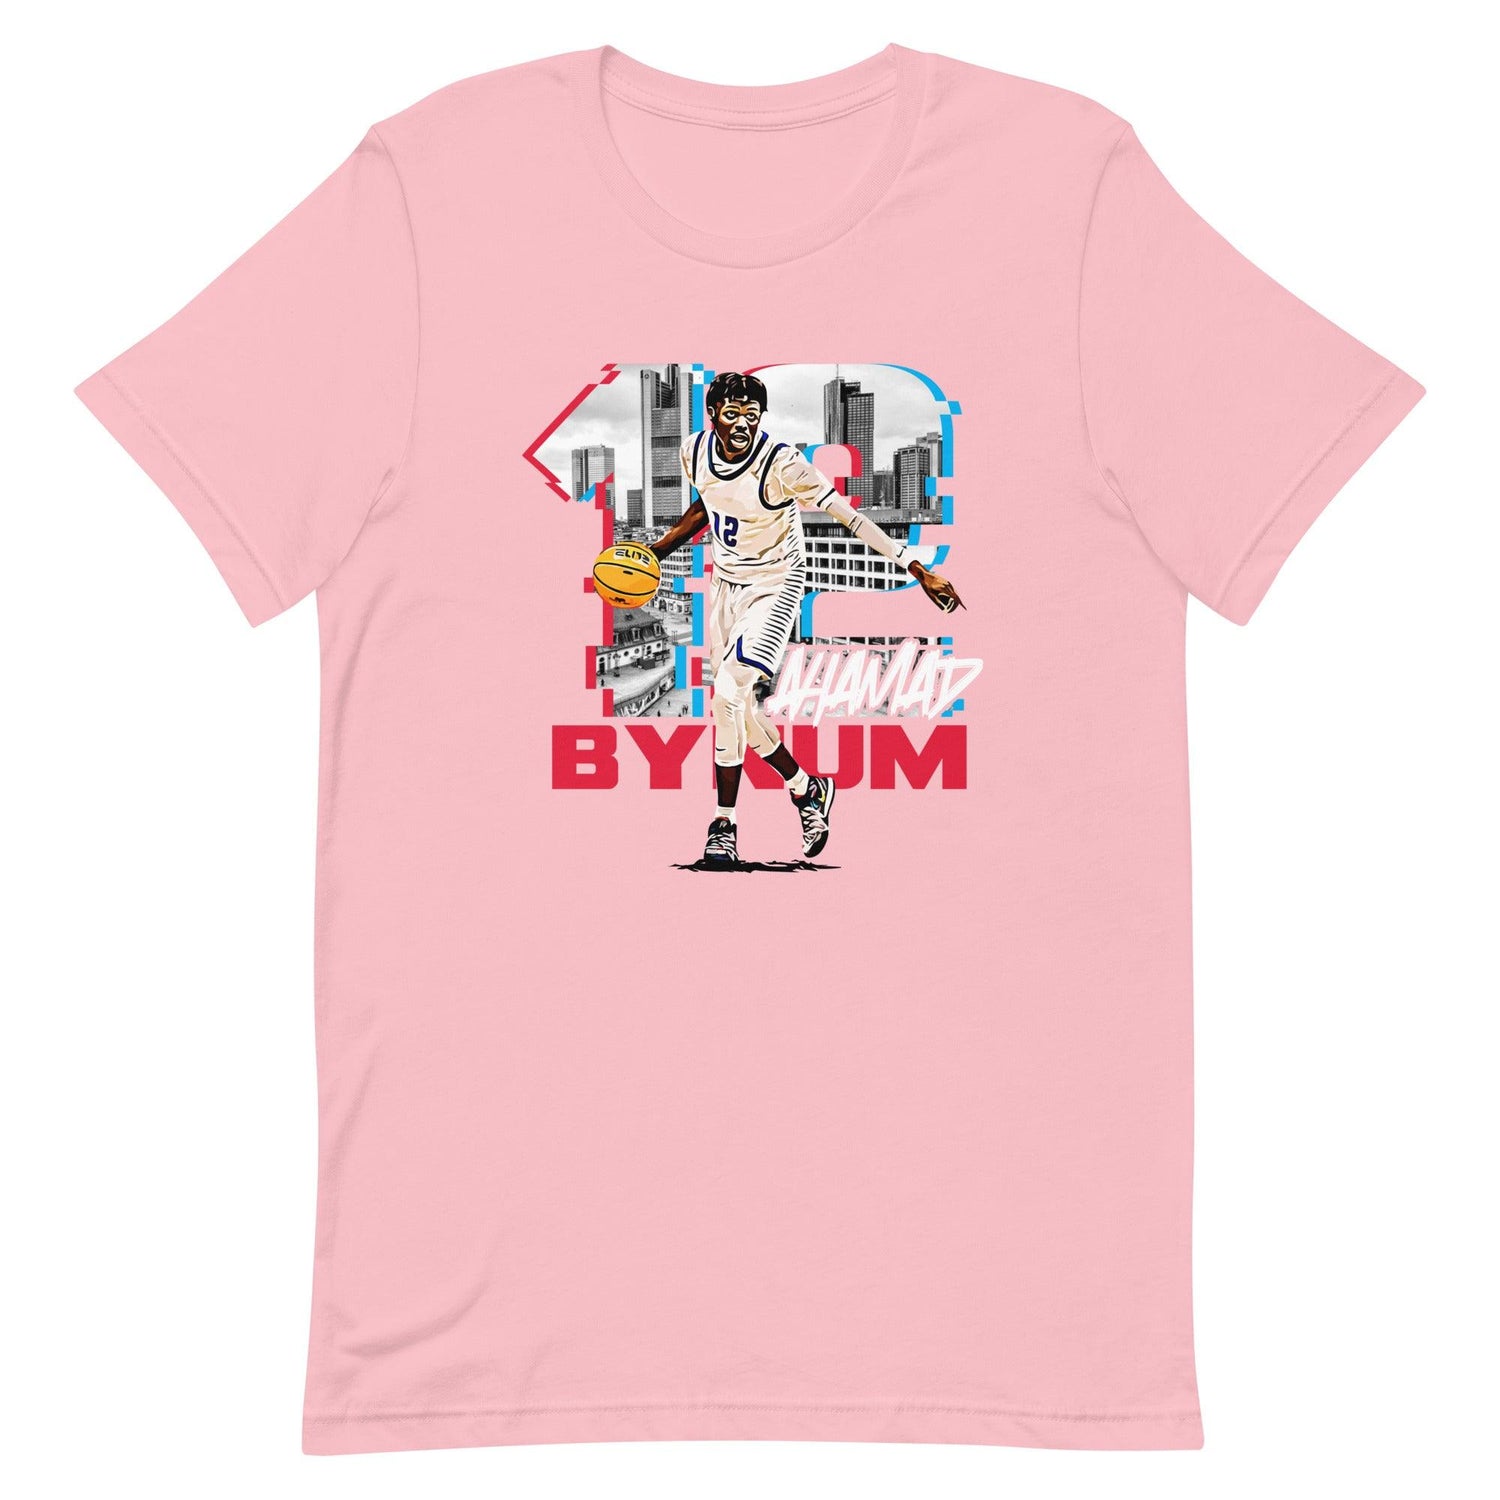 Ahamad Bynum "Gameday" t-shirt - Fan Arch